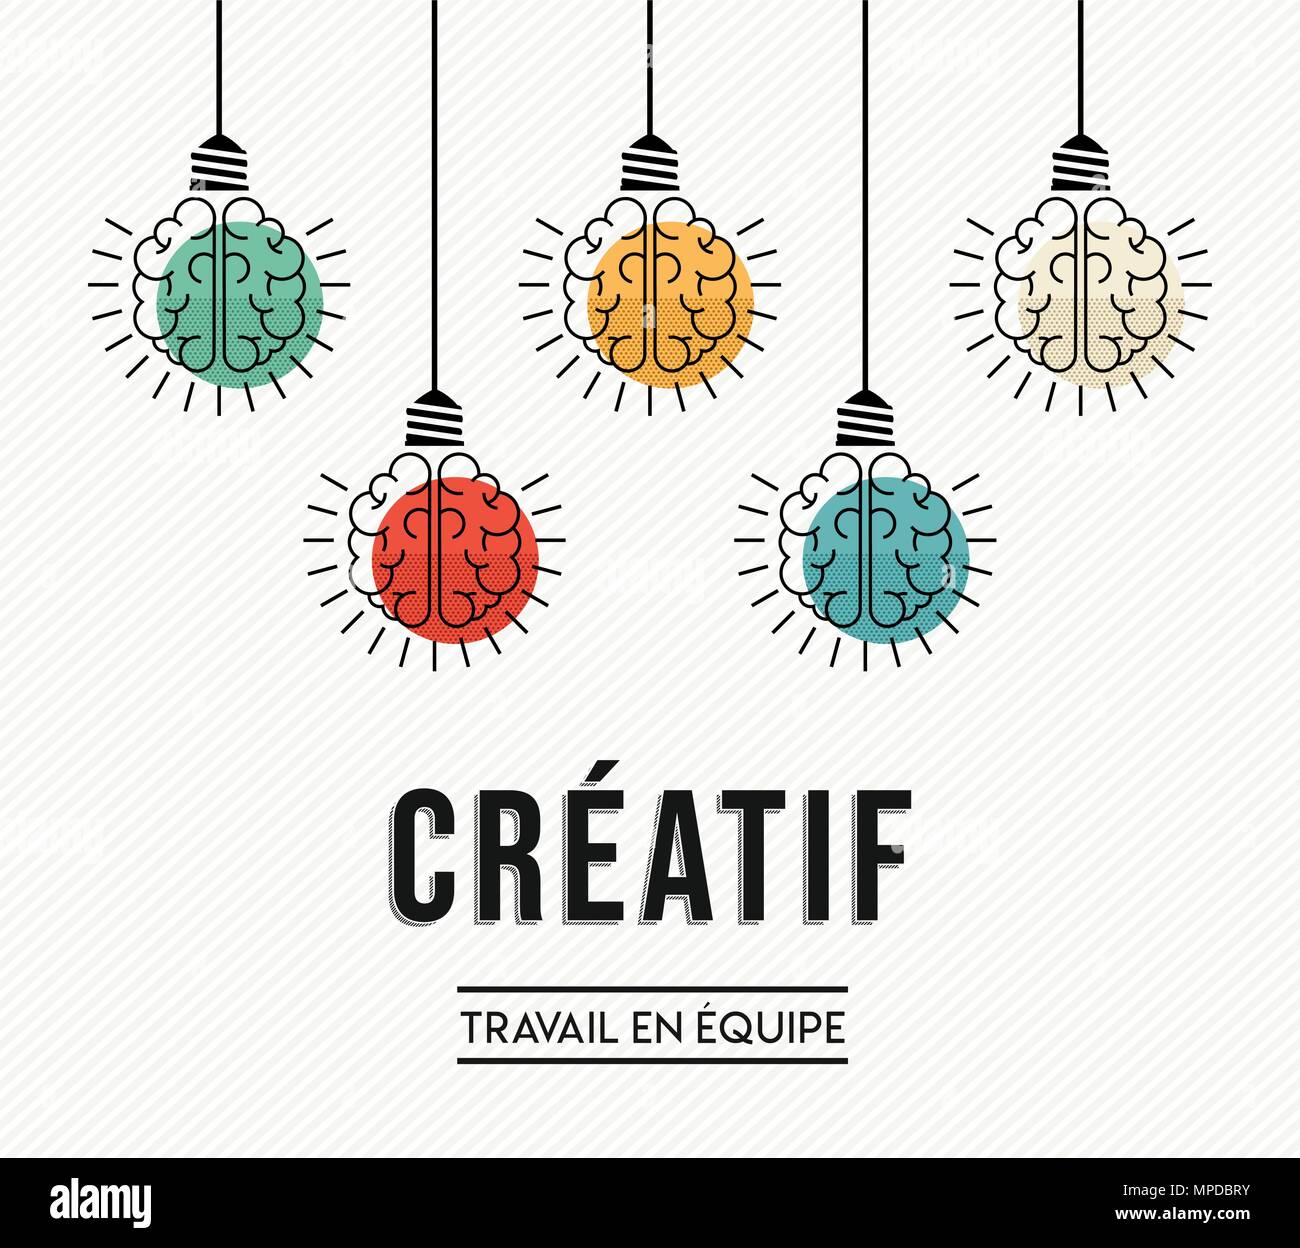 Le travail d'équipe créatif design moderne en langue française avec le cerveau humain comme lampe lumière colorée, la créativité d'entreprise concept. Vecteur EPS10. Illustration de Vecteur